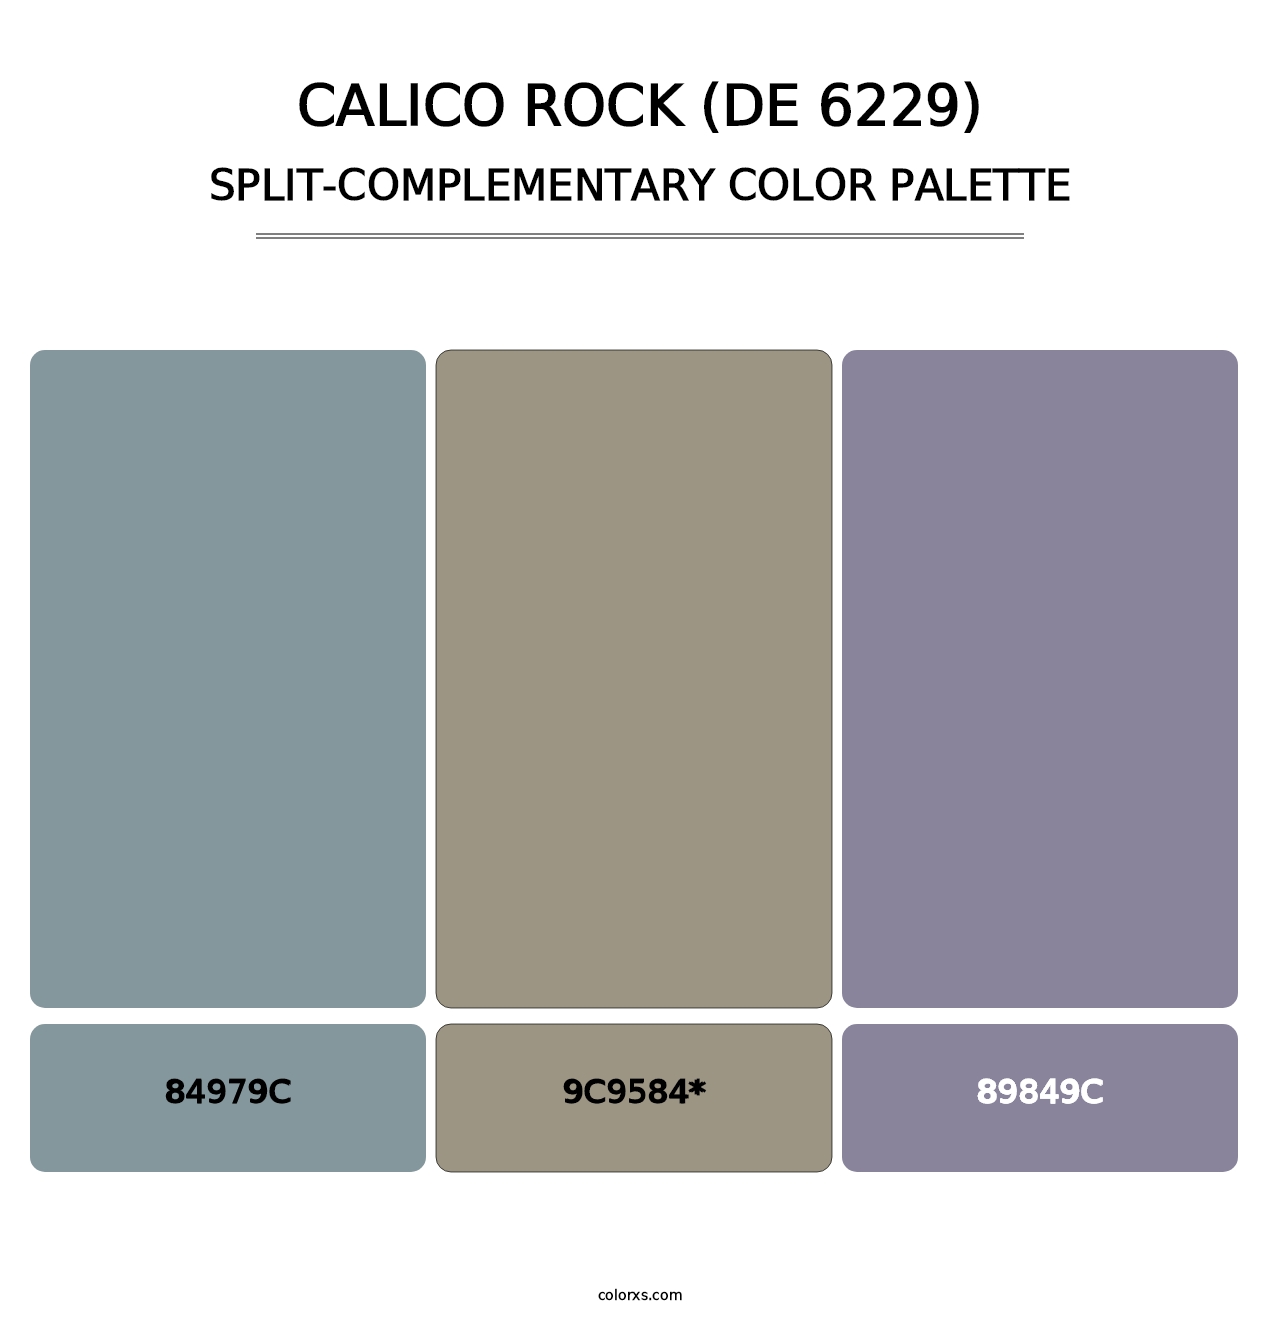 Calico Rock (DE 6229) - Split-Complementary Color Palette